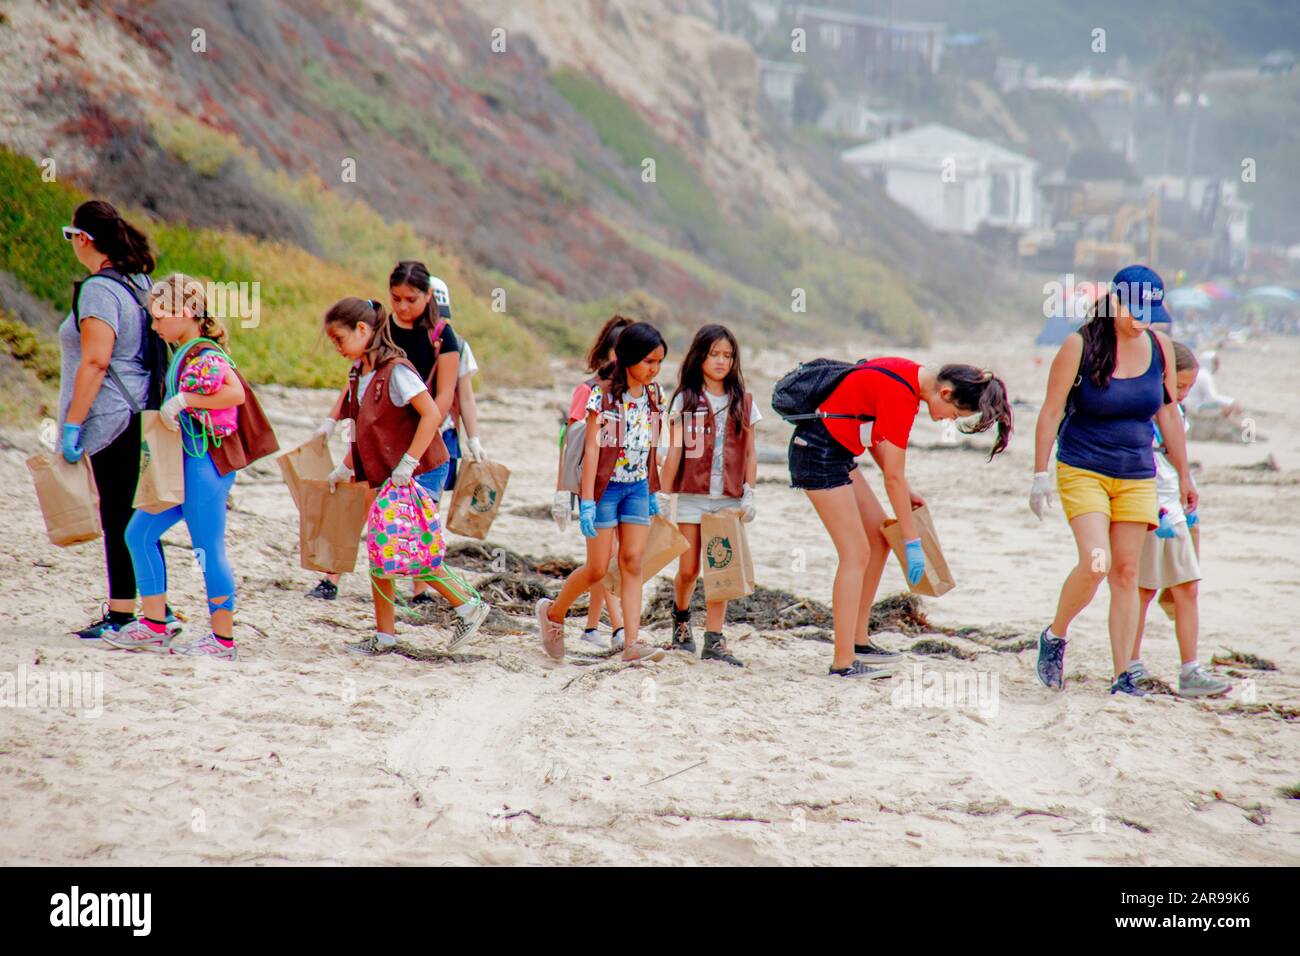 En sus chalecos Brownie Girl Scout y guantes de goma y llevar bolsas de basura, las hijas se unen a sus madres en busca de rehusar a recoger en la costa en Laguna Beach, CA. Foto de stock